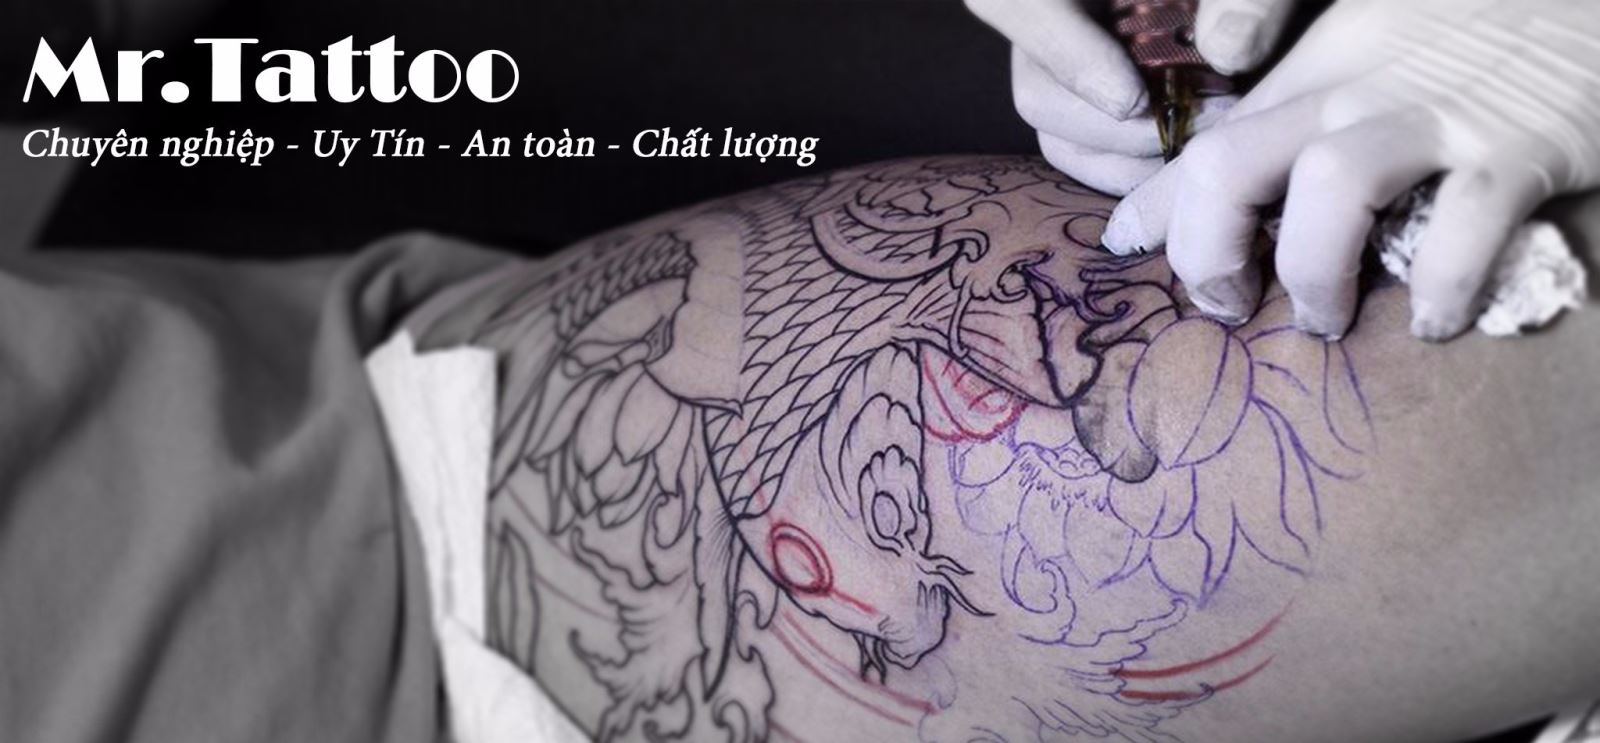 Tattoo là gì và những lưu ý khi xăm hình Tattoo